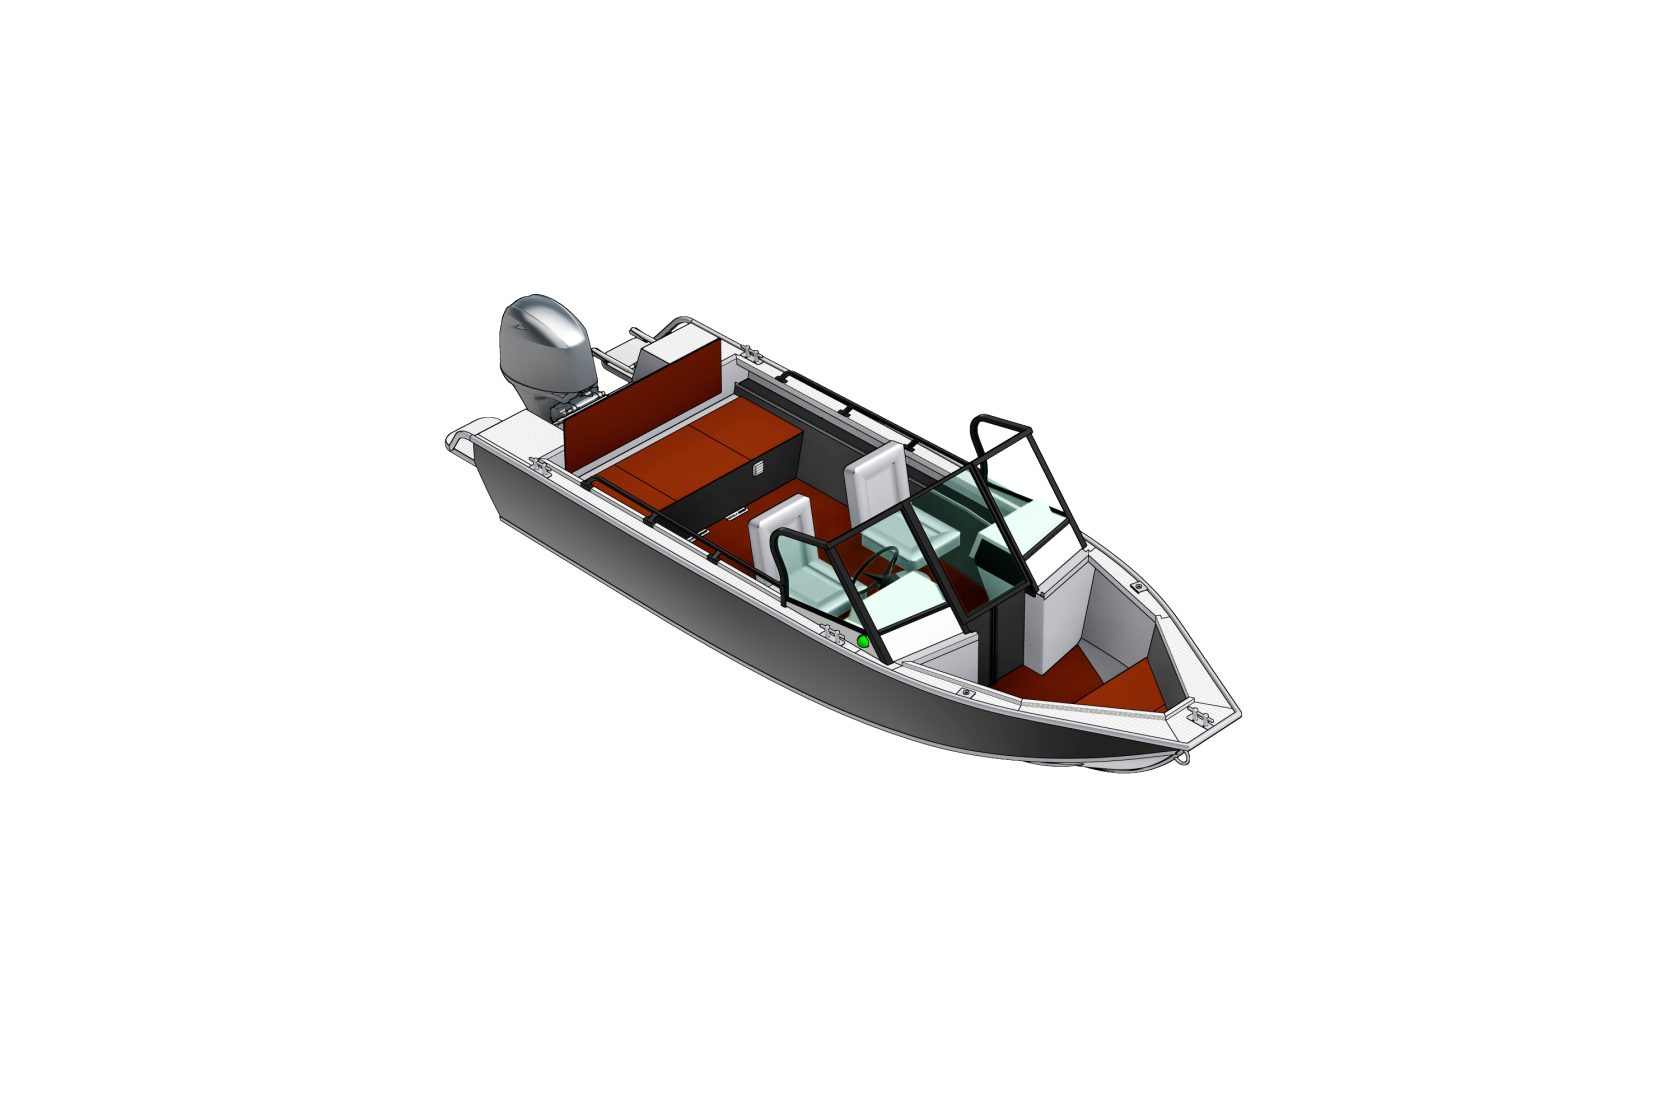 Катер REALCRAFT 600 Cabin. Лодка Реалкрафт 600 кабин. Моторная лодка REALCRAFT 700 Cabin. REALCRAFT Boats logo. Шлюпка слова